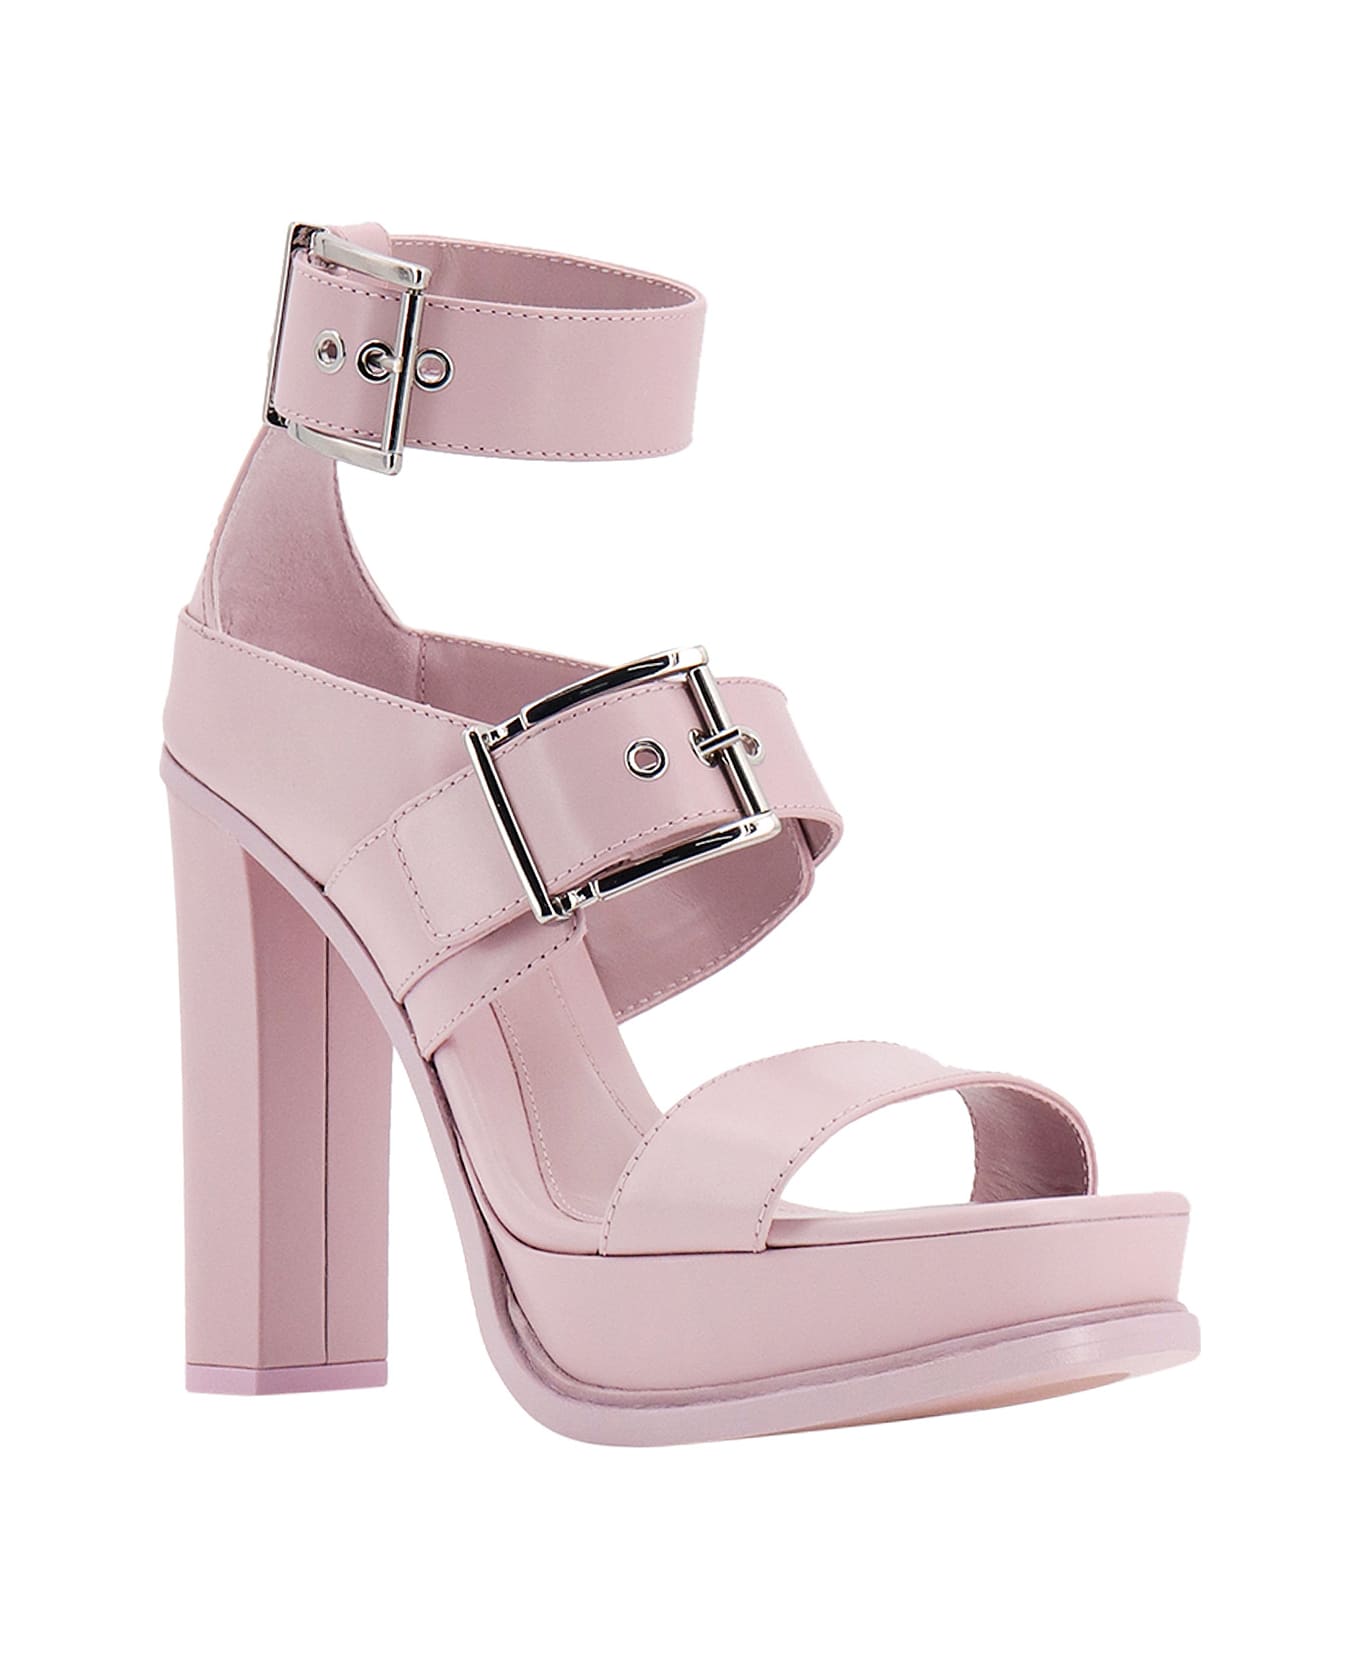 Alexander McQueen Sandals - Pink サンダル